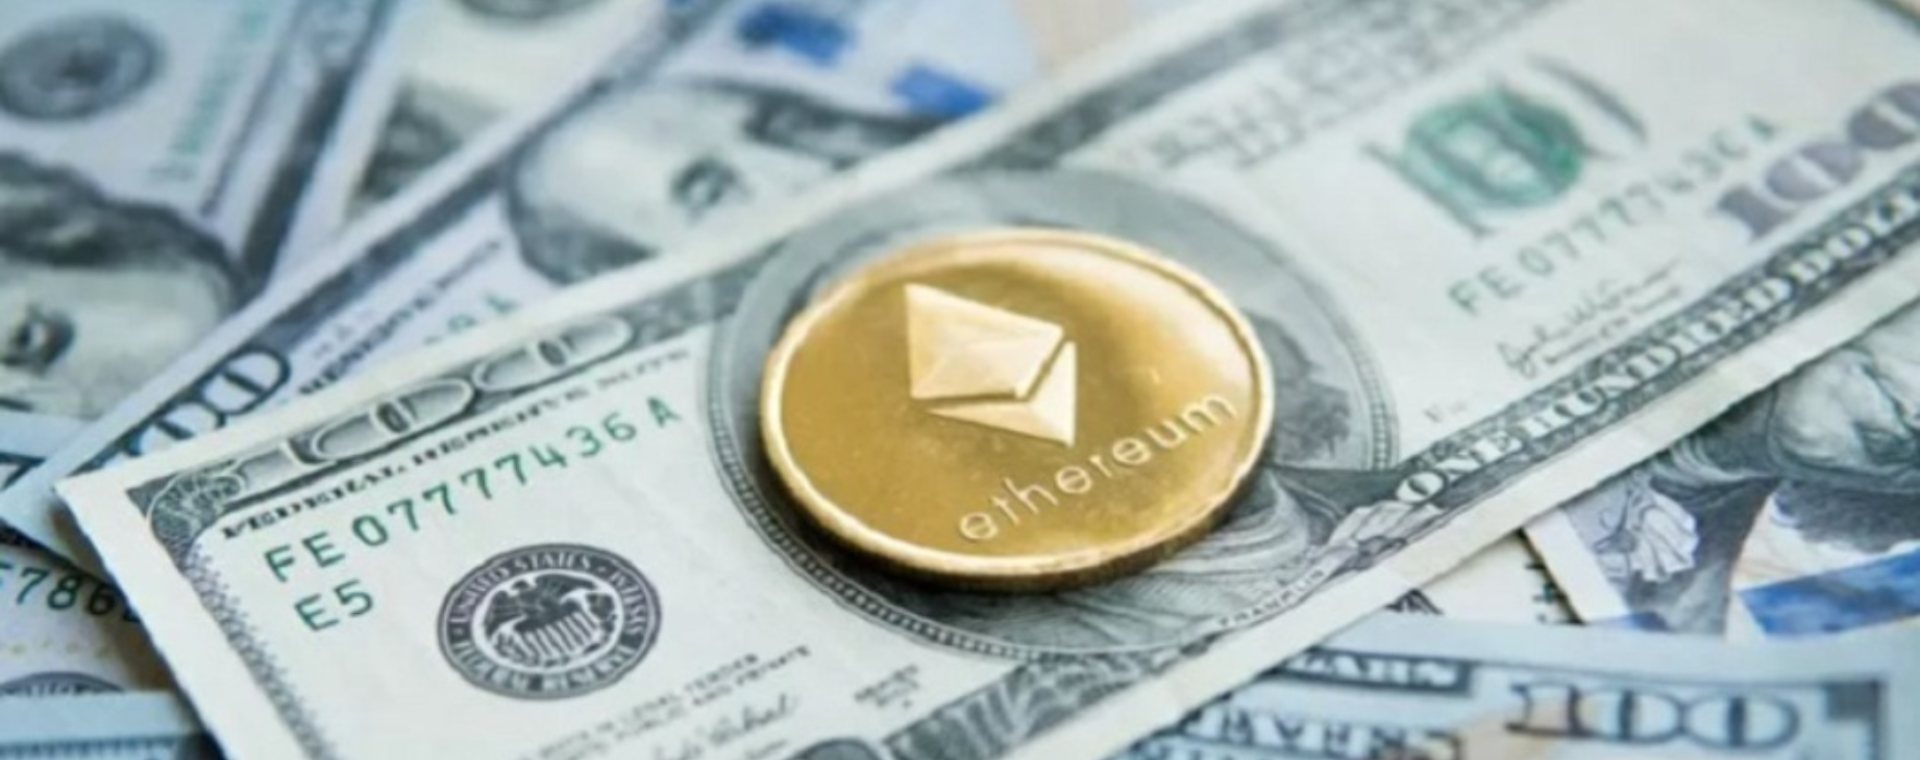 Ilustrasi mata uang kripto Ethereum di atas tumpukan dolar AS./ANTARA FOTO-Shutterstock - pri.